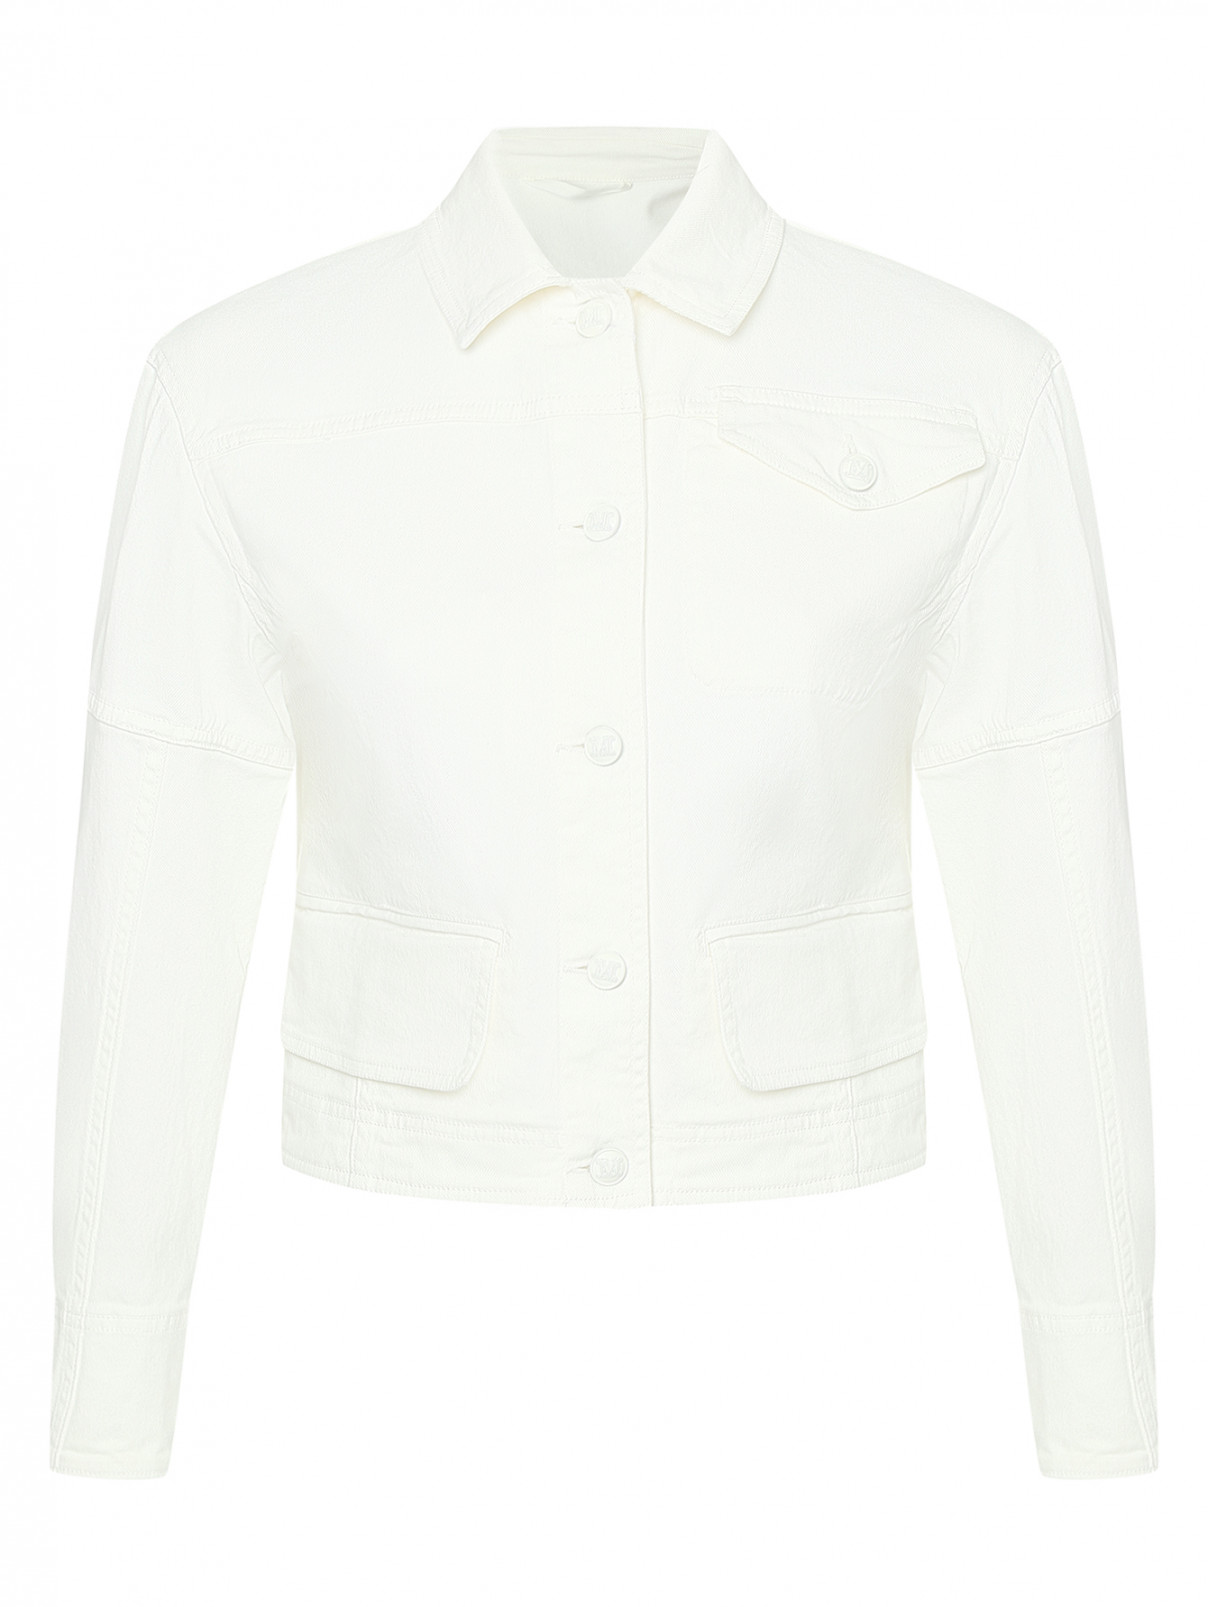 Укороченная куртка из хлопка Max Mara  –  Общий вид  – Цвет:  Белый